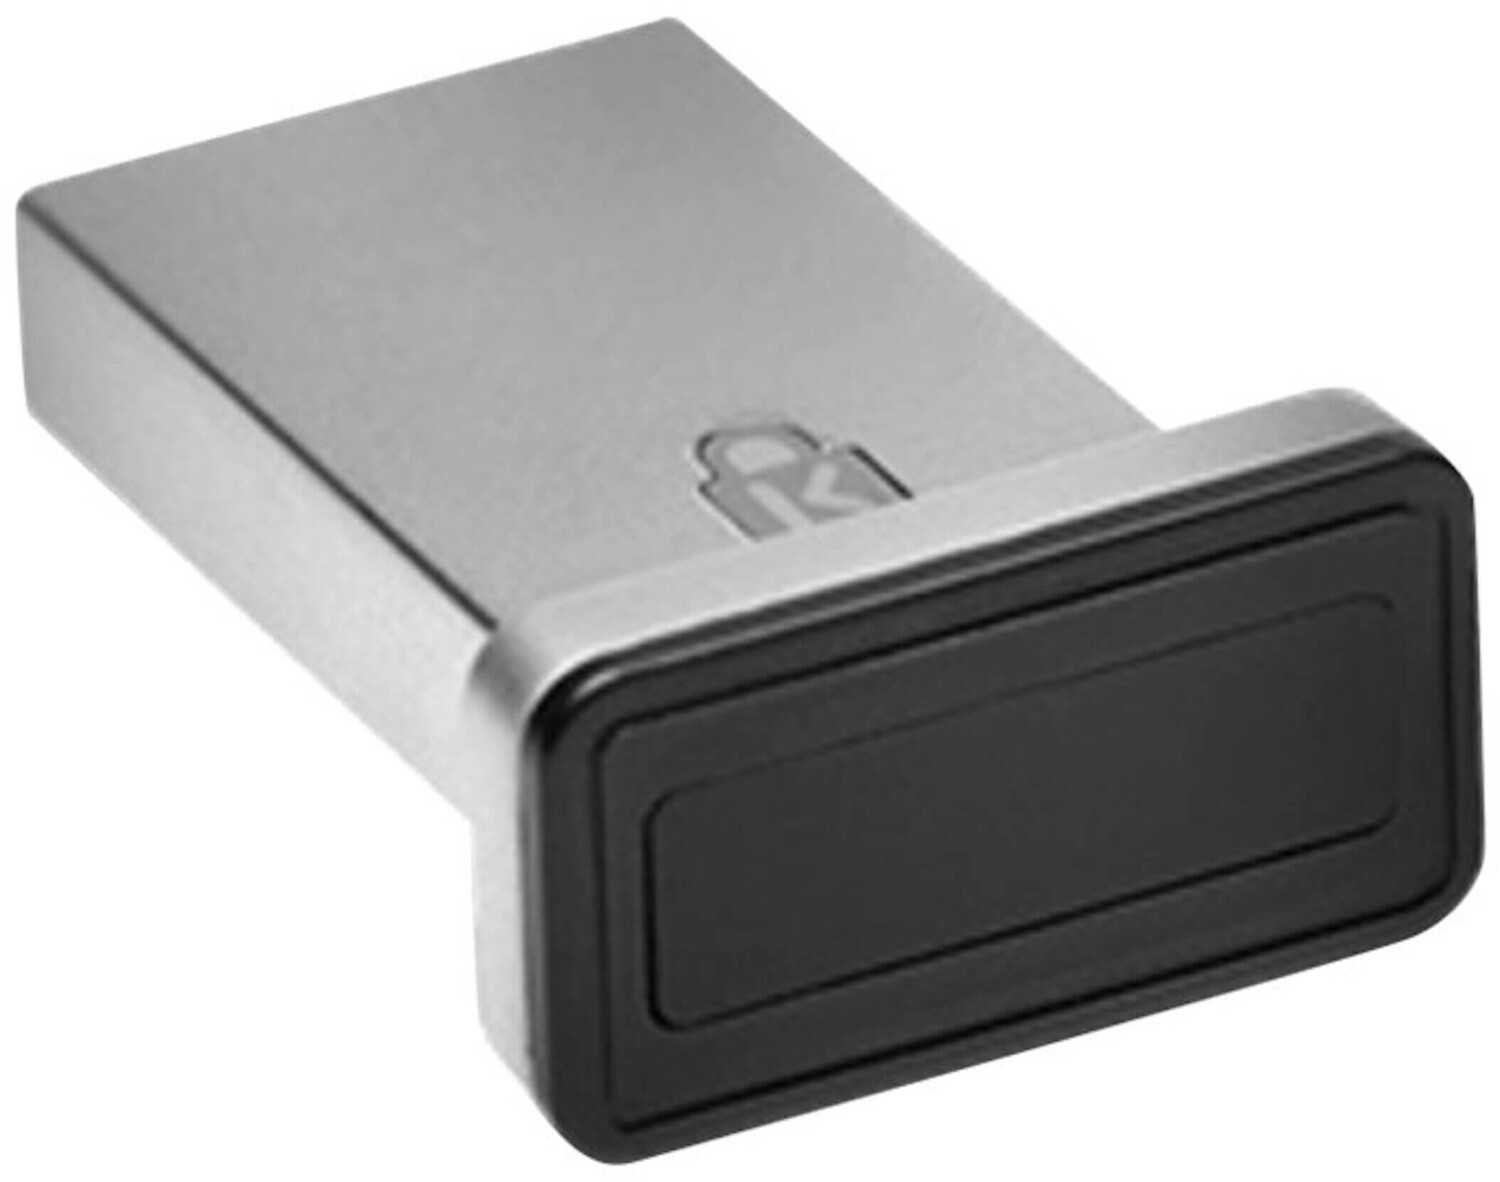 YUBIKEY 5C NFC: CLÉ DE SÉCURITÉ, USB-C, NFC chez reichelt elektronik